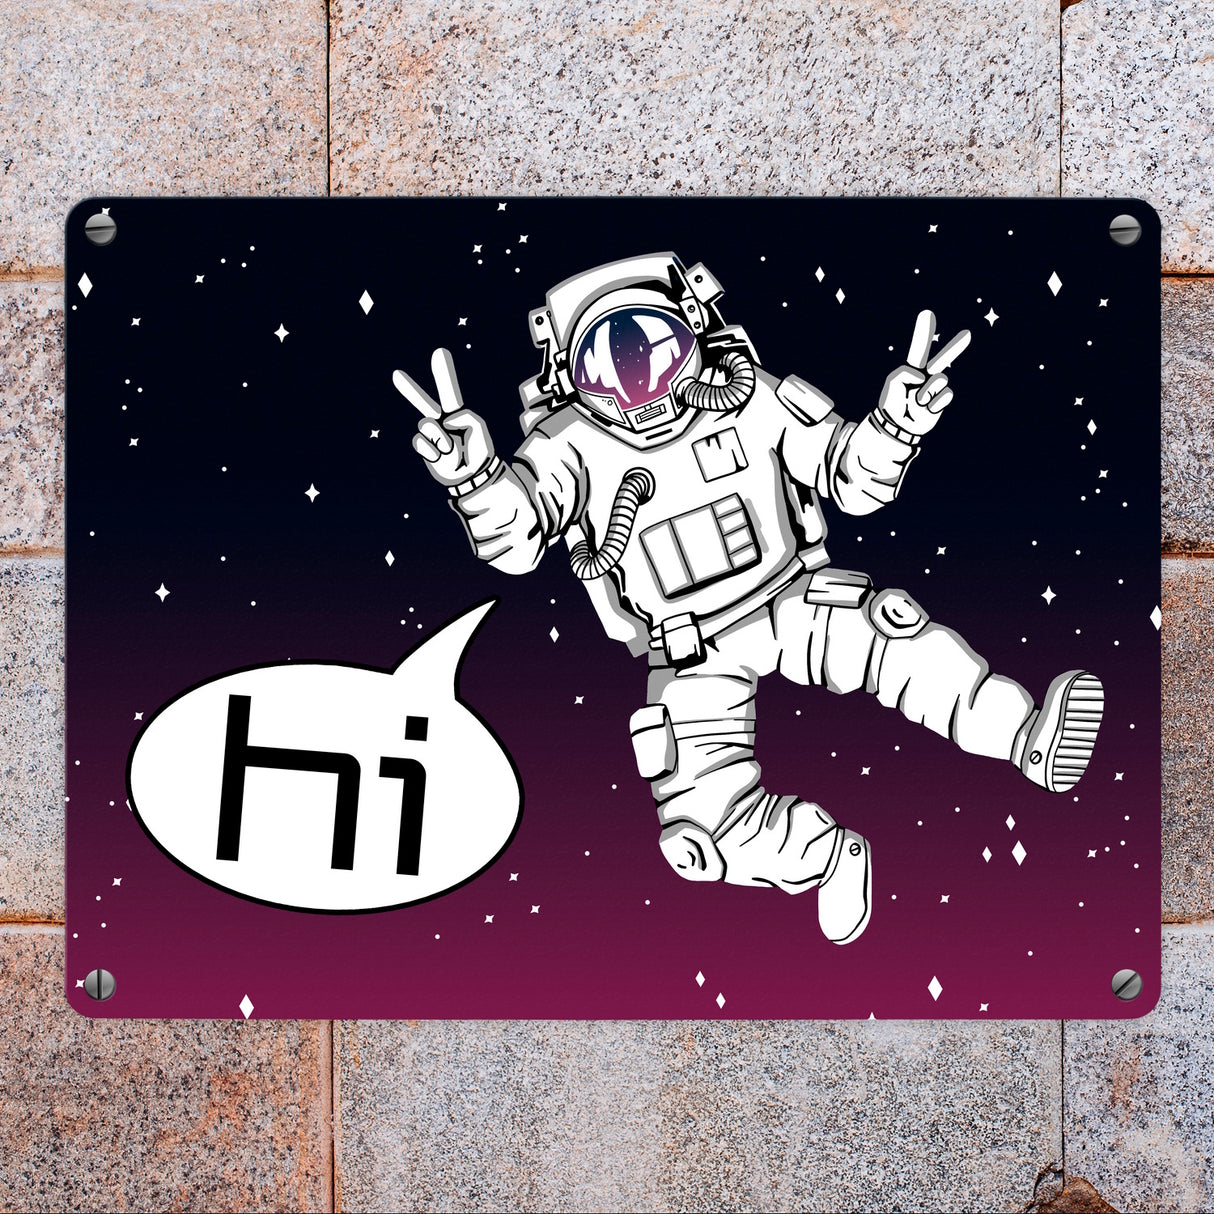 Astronaut im Weltall mit Peace-Zeichen witziges Metallschild